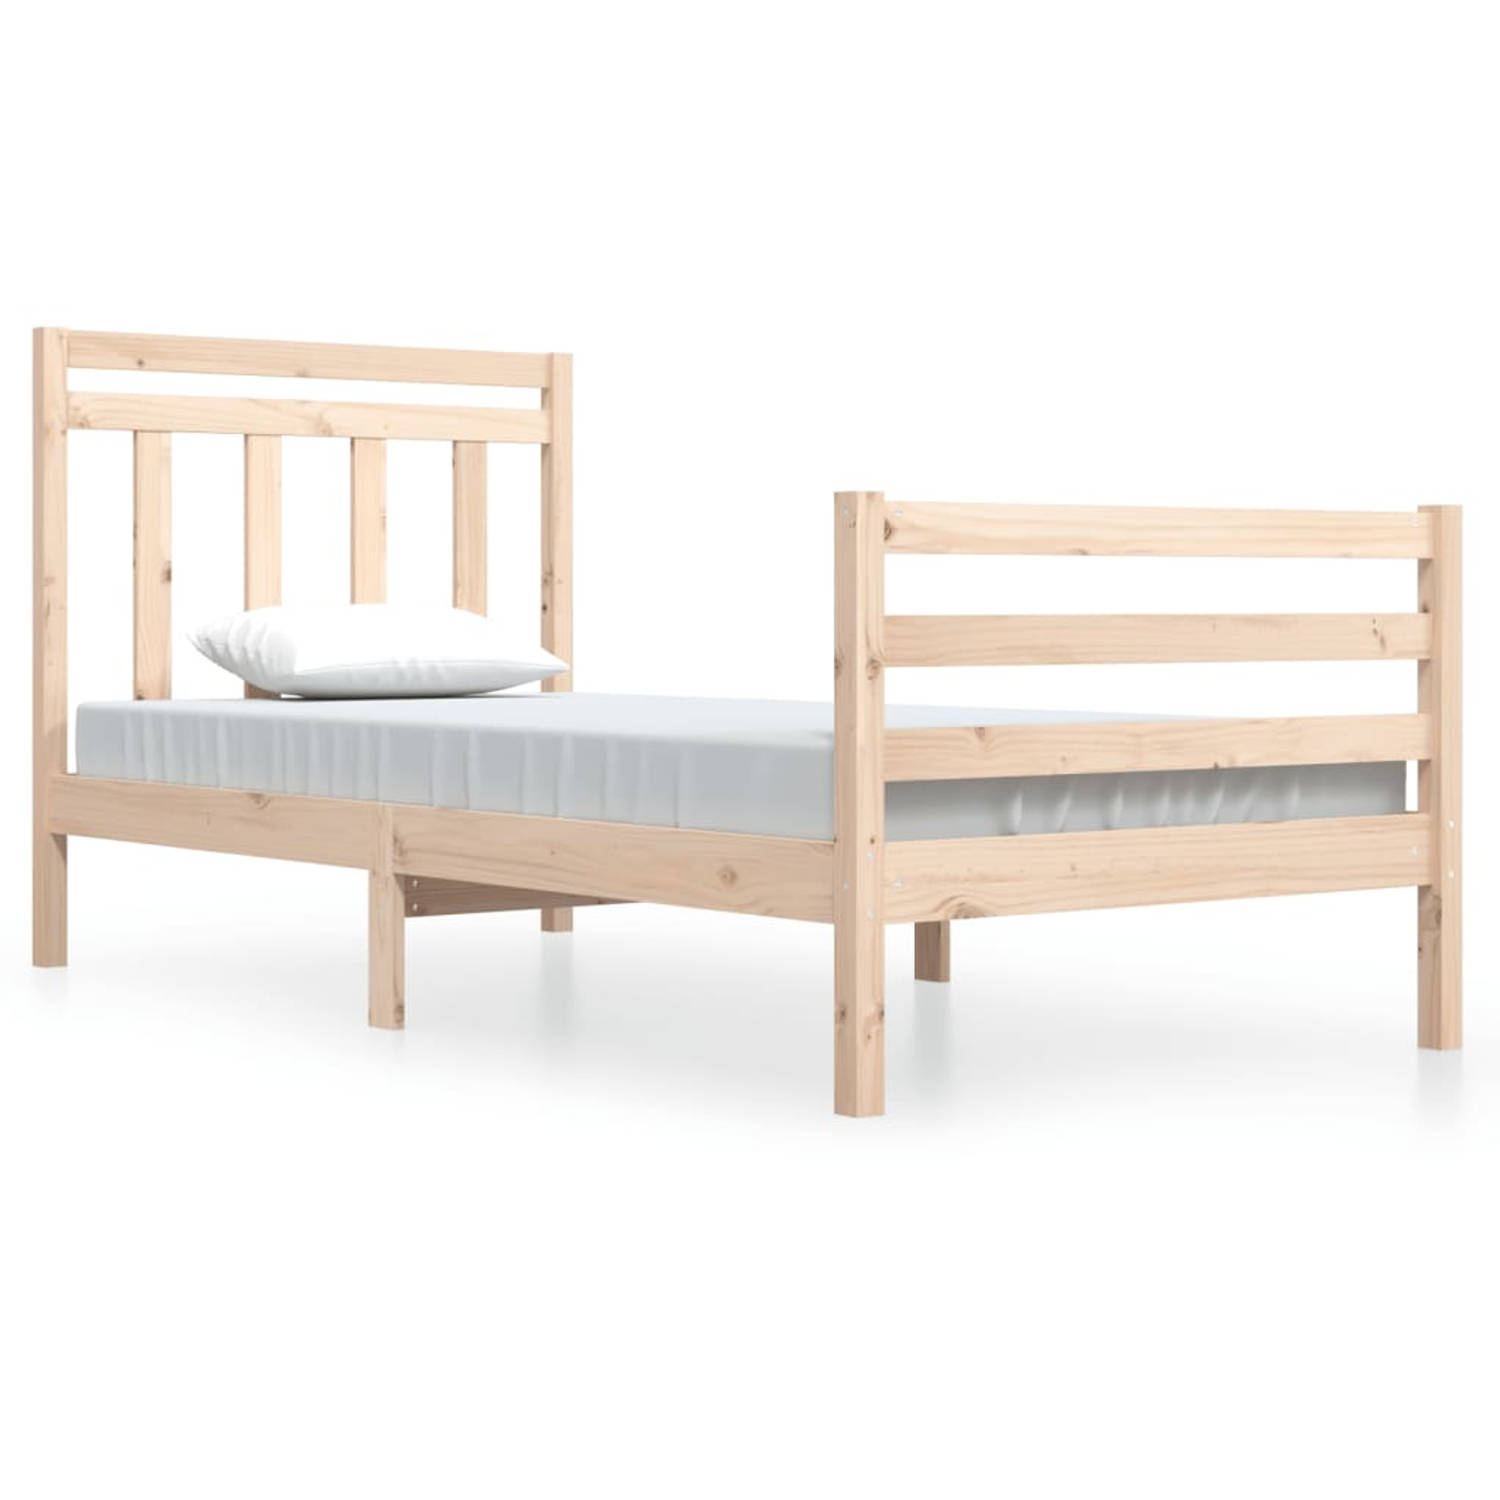 The Living Store Bedframe massief hout 100x200 cm - Bedframe - Bedframes - Eenpersoonsbed - Bed - Bedombouw - Ledikant - Houten Bedframe - Eenpersoonsbedden - Bedden - Bedombouwen